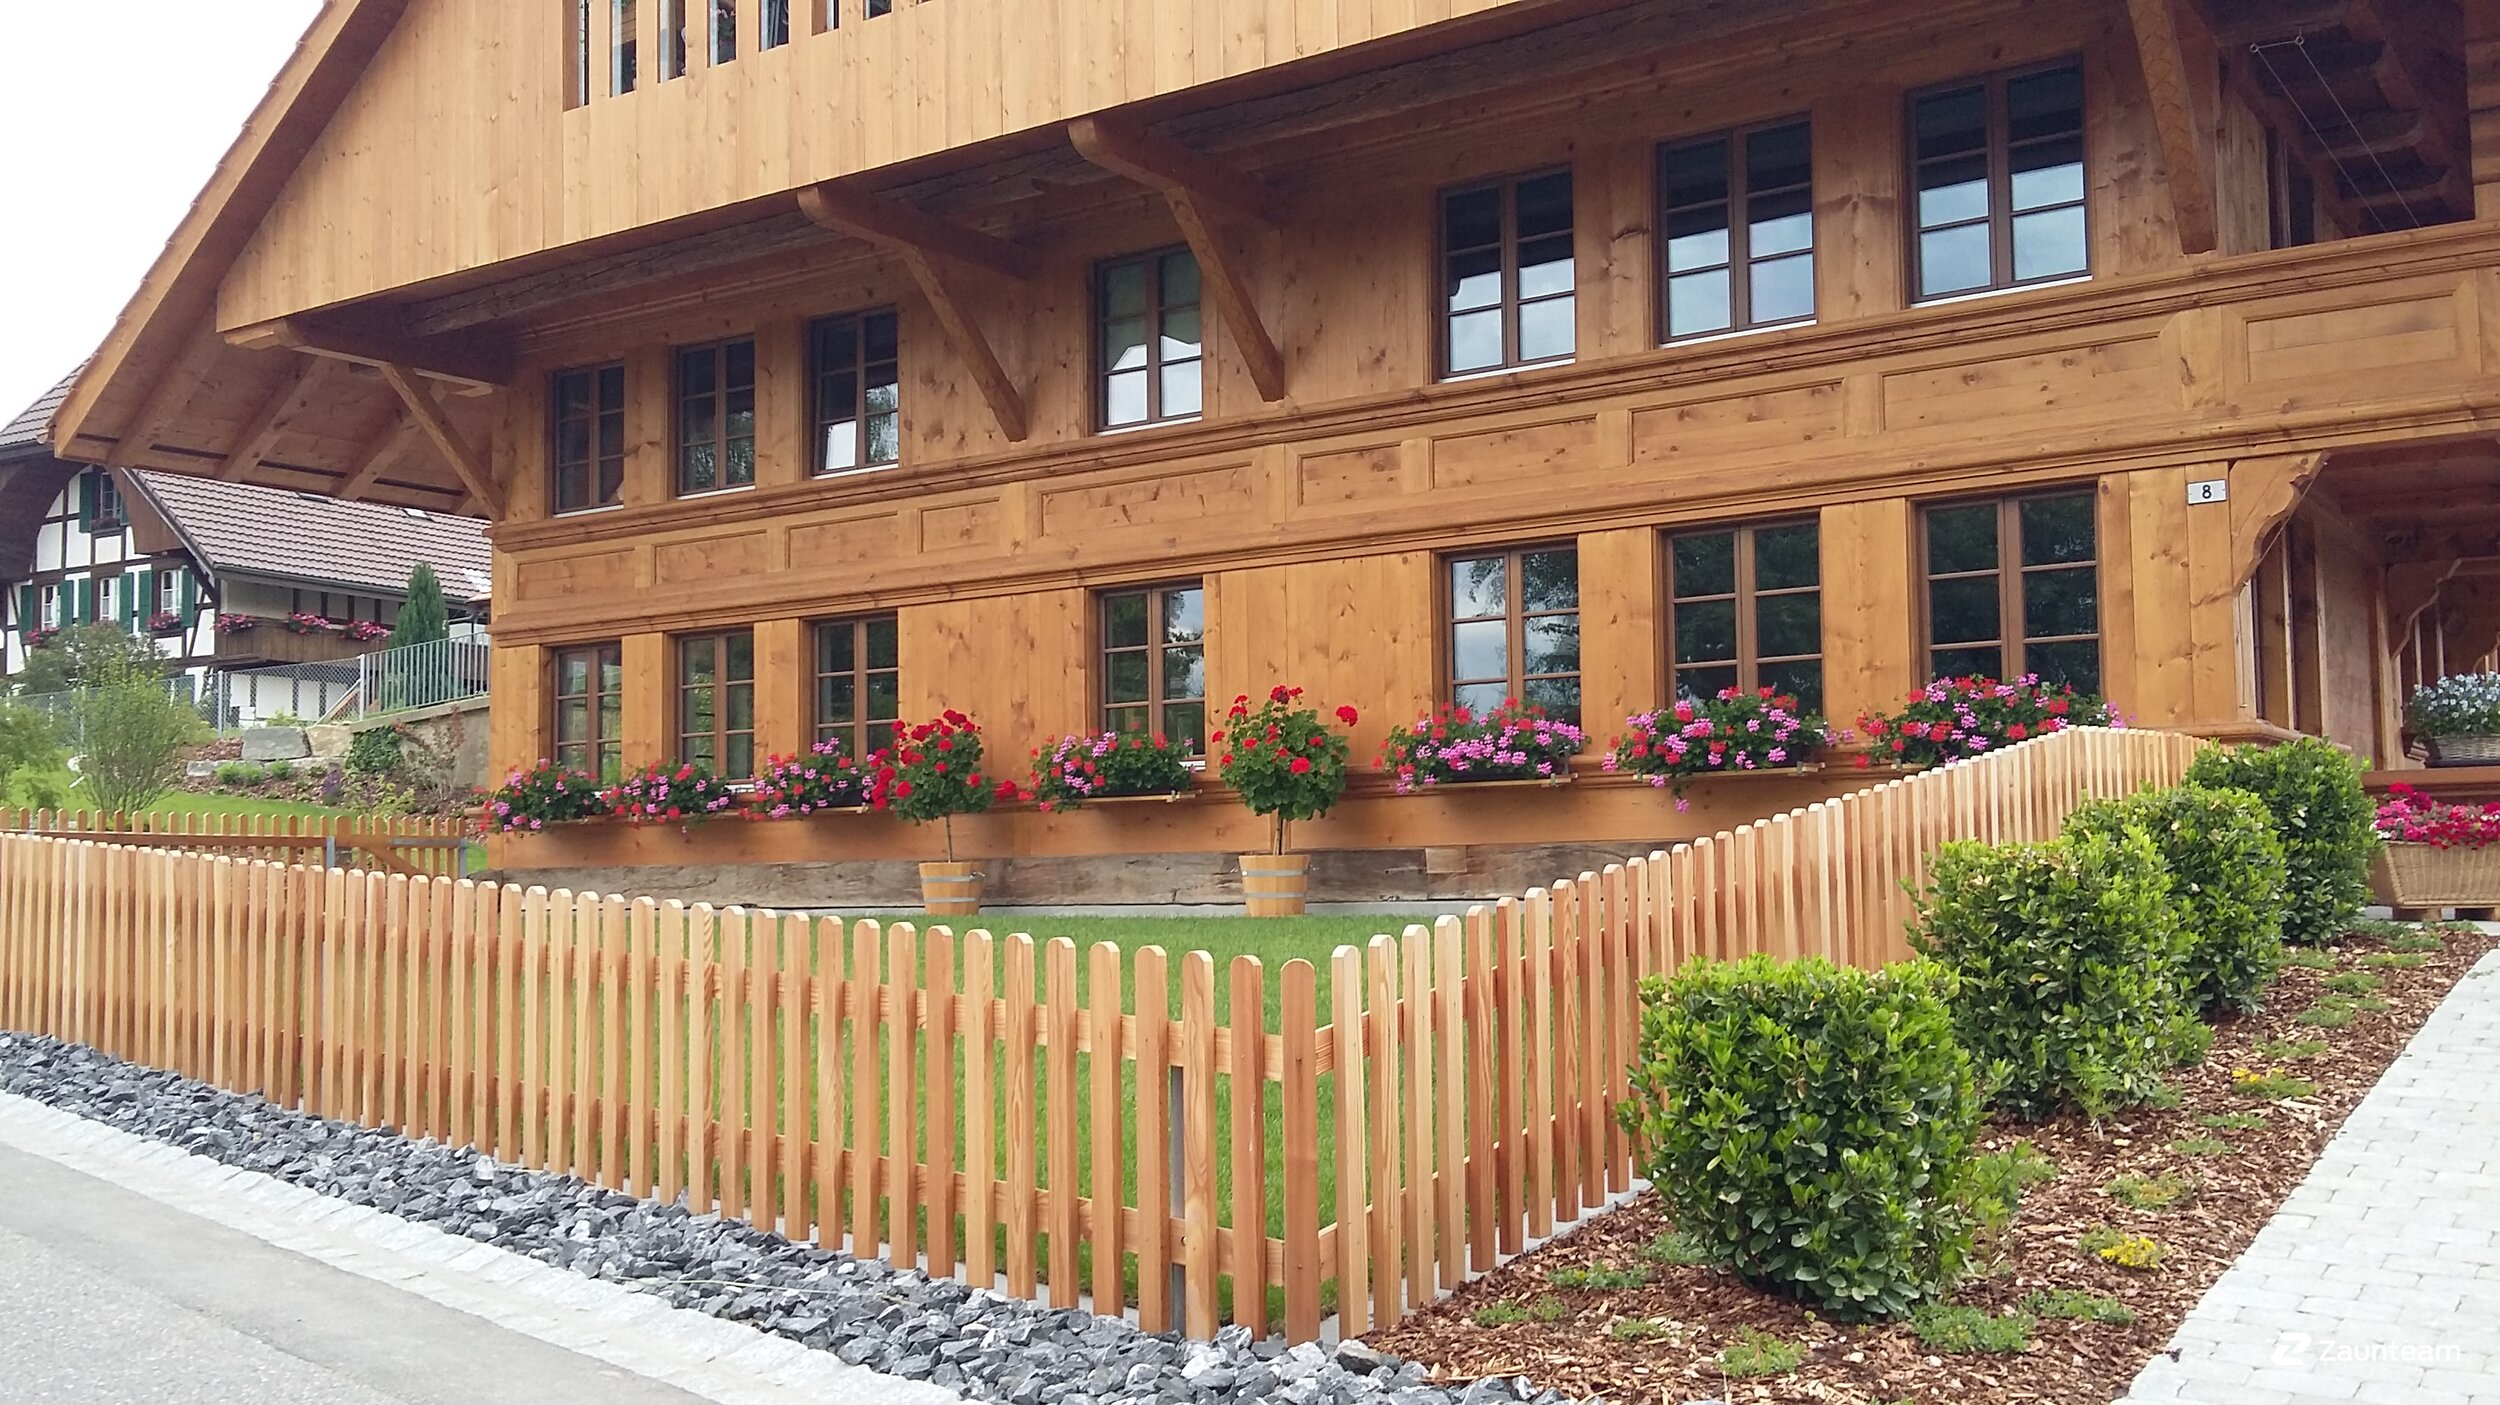 Protection brise-vue en bois de 2017 à 3037 Herrenschwanden Suisse de Zaunteam Spahni AG.